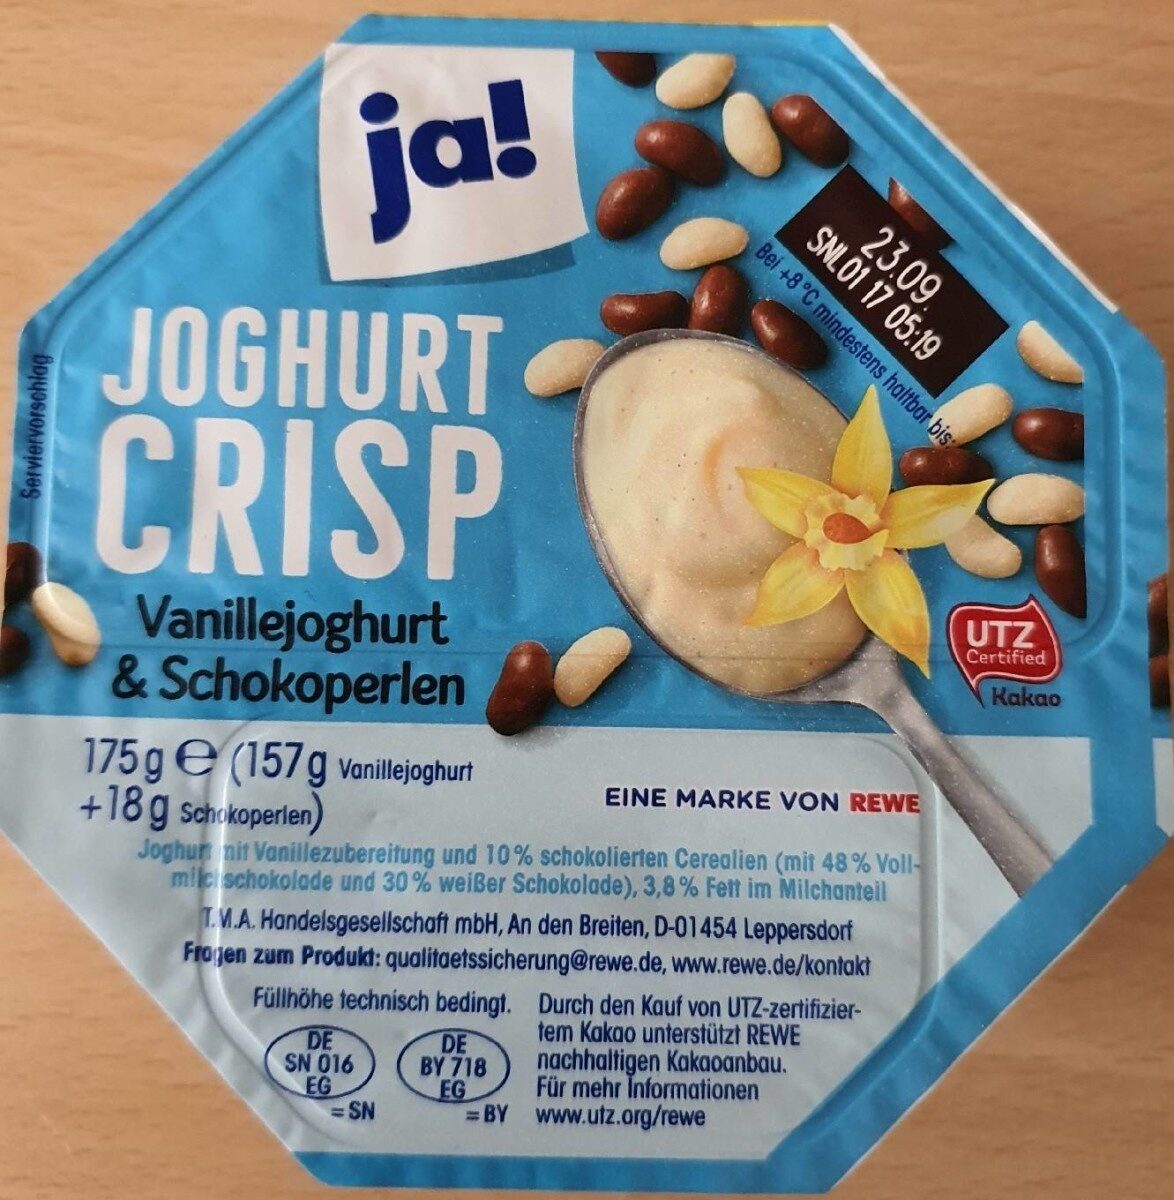 Joghurts Crisp Vanillejoghurt & Schokoperlen - Producto - de